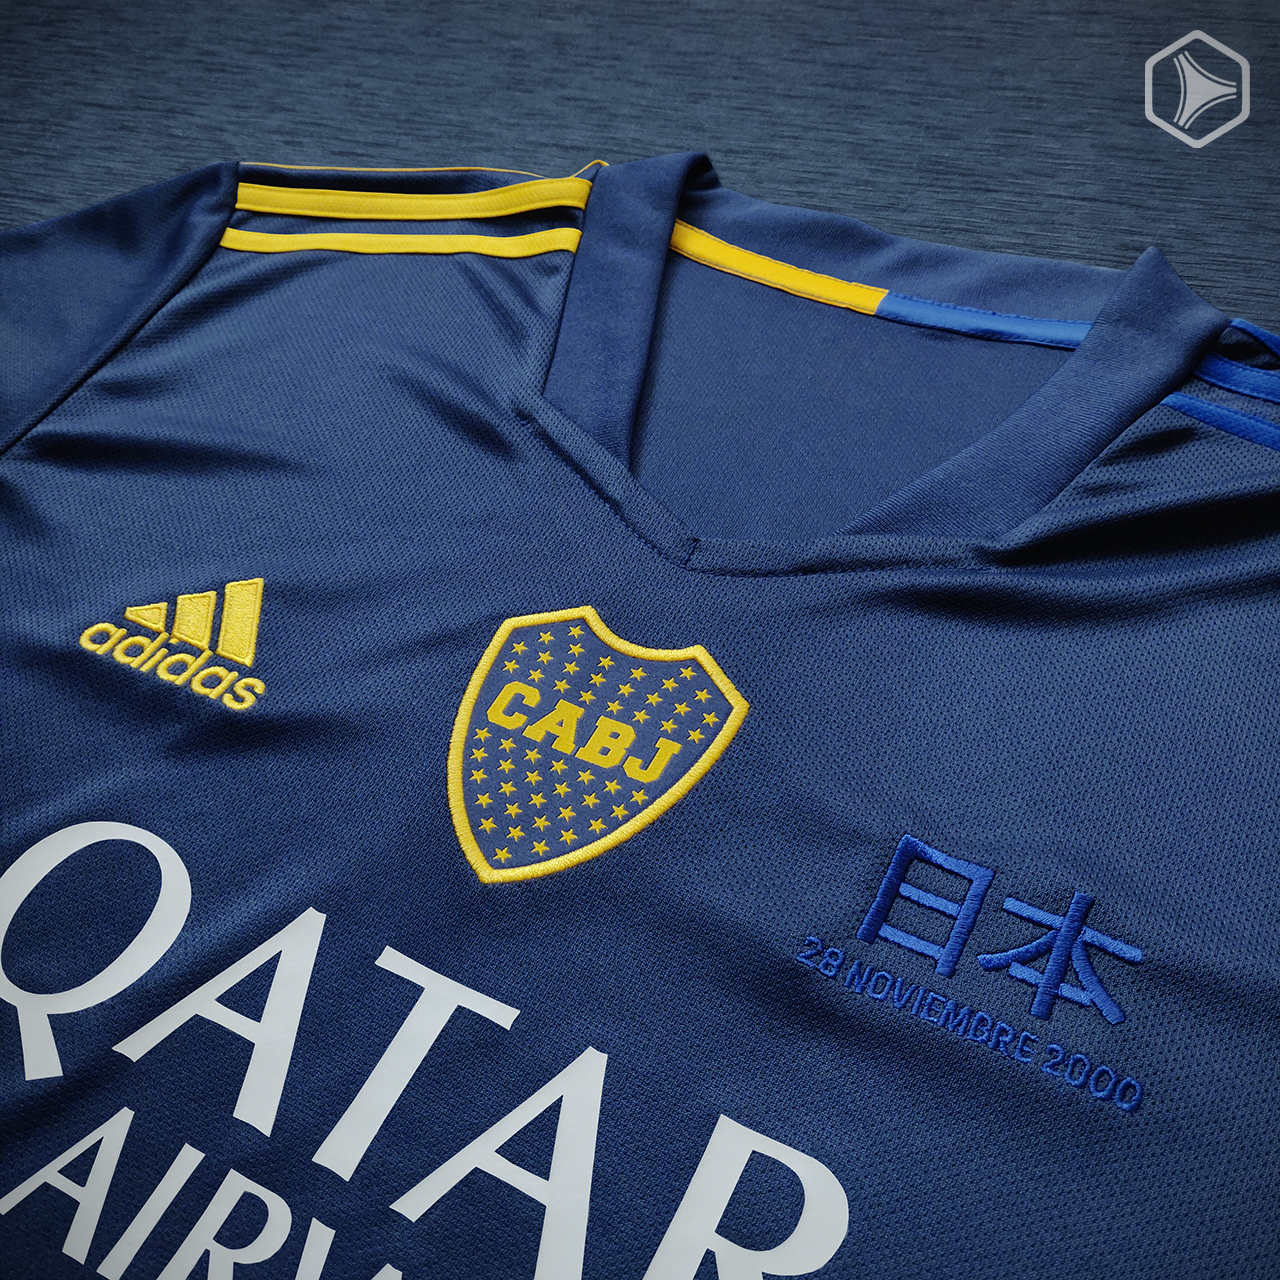 Cuarta camiseta adidas Boca Juniors 2020 2021